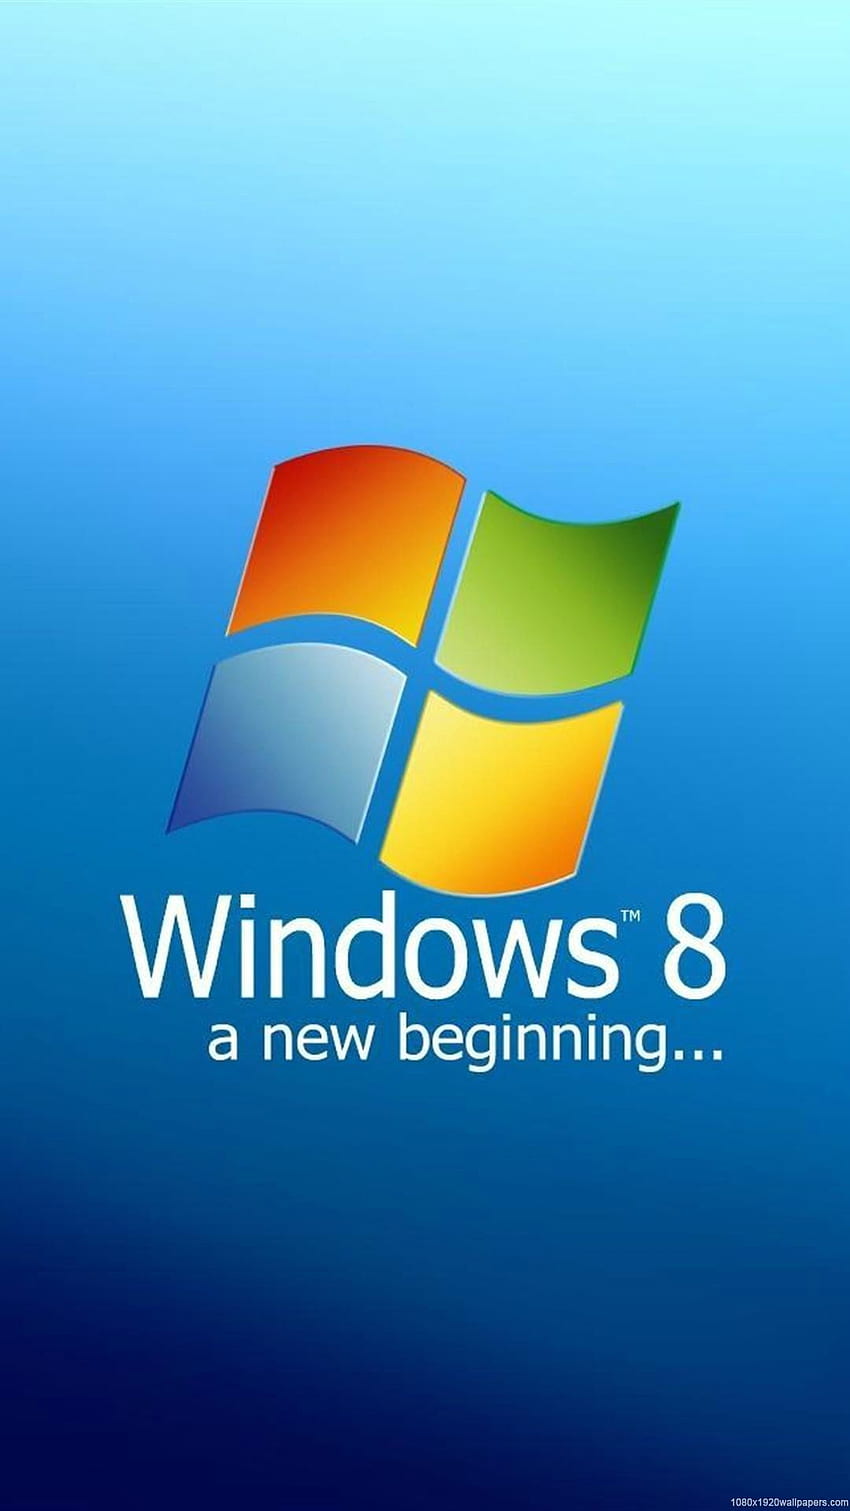 Windows 7 không chỉ dành cho máy tính, hiện nay bạn cũng có thể sử dụng hệ điều hành Windows 7 trên điện thoại di động của mình. Với giao diện đẹp và tính năng tuyệt vời, Windows 7 cho điện thoại di động sẽ khiến bạn hài lòng.